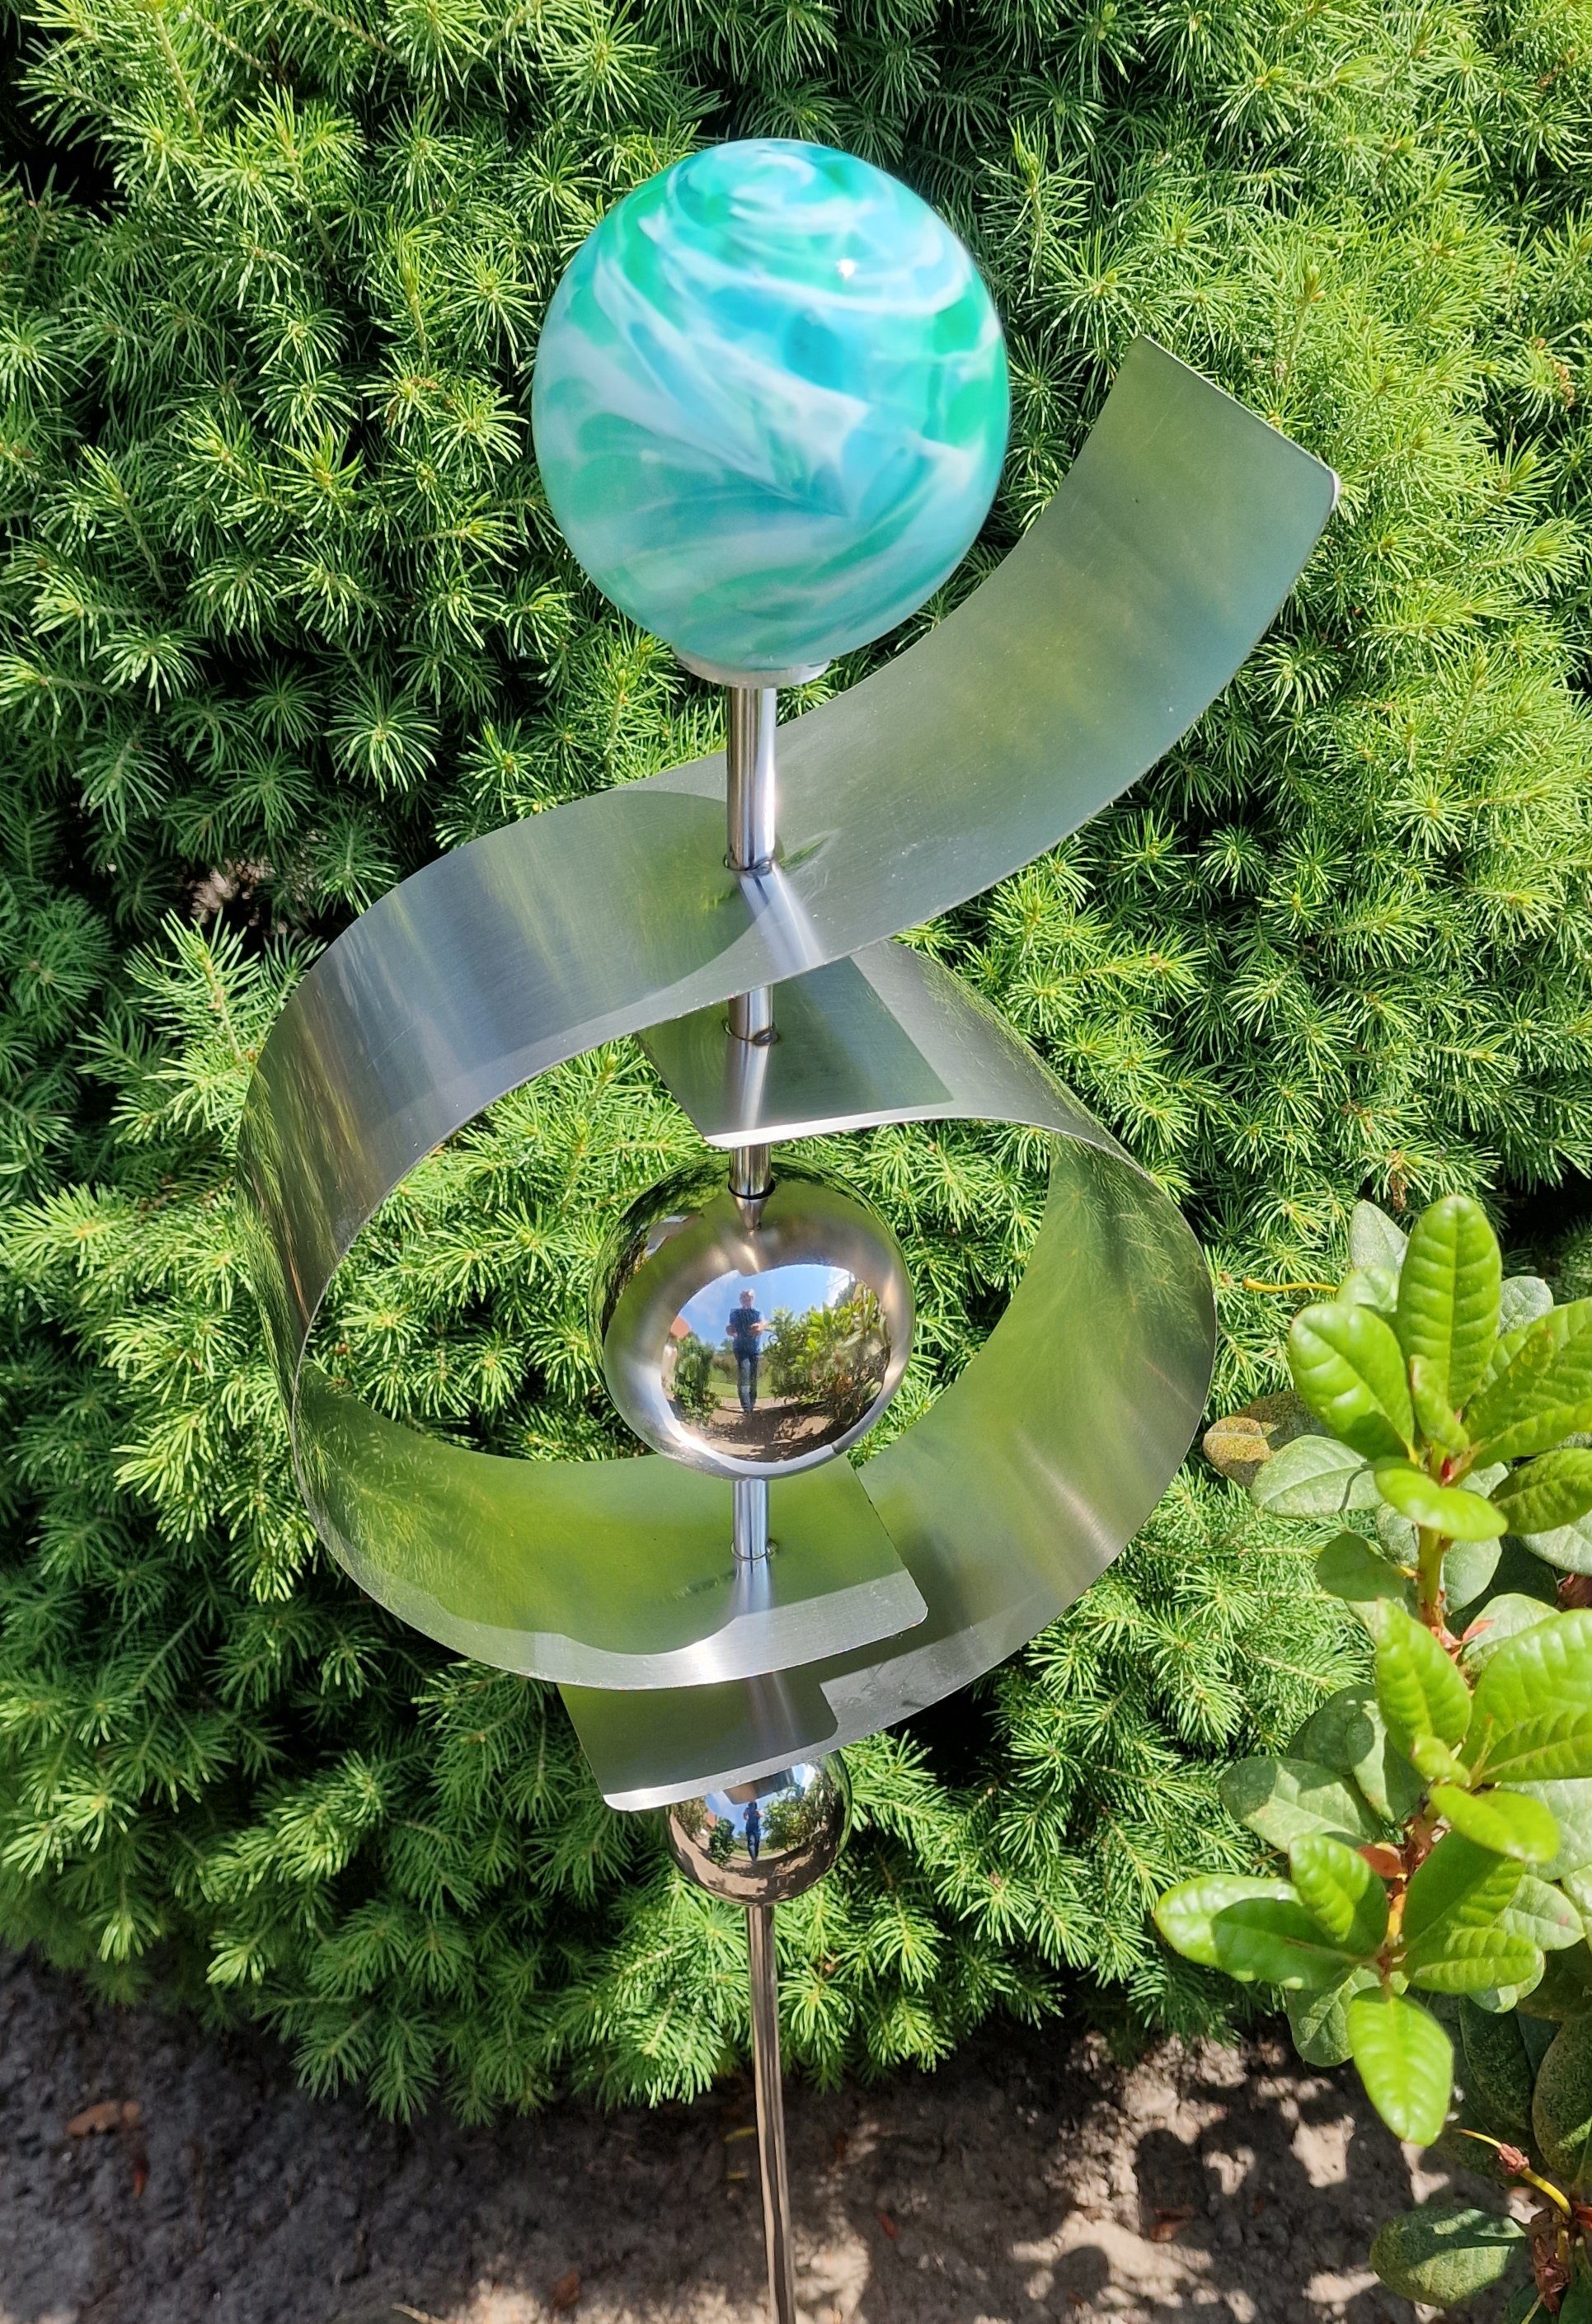 Glaszauber aus Garten-Ambiente Jade Bocker Gartenstecker Glaskugel cm 100 Edelstahl Beetstecker Garten Jupiter Jürgen